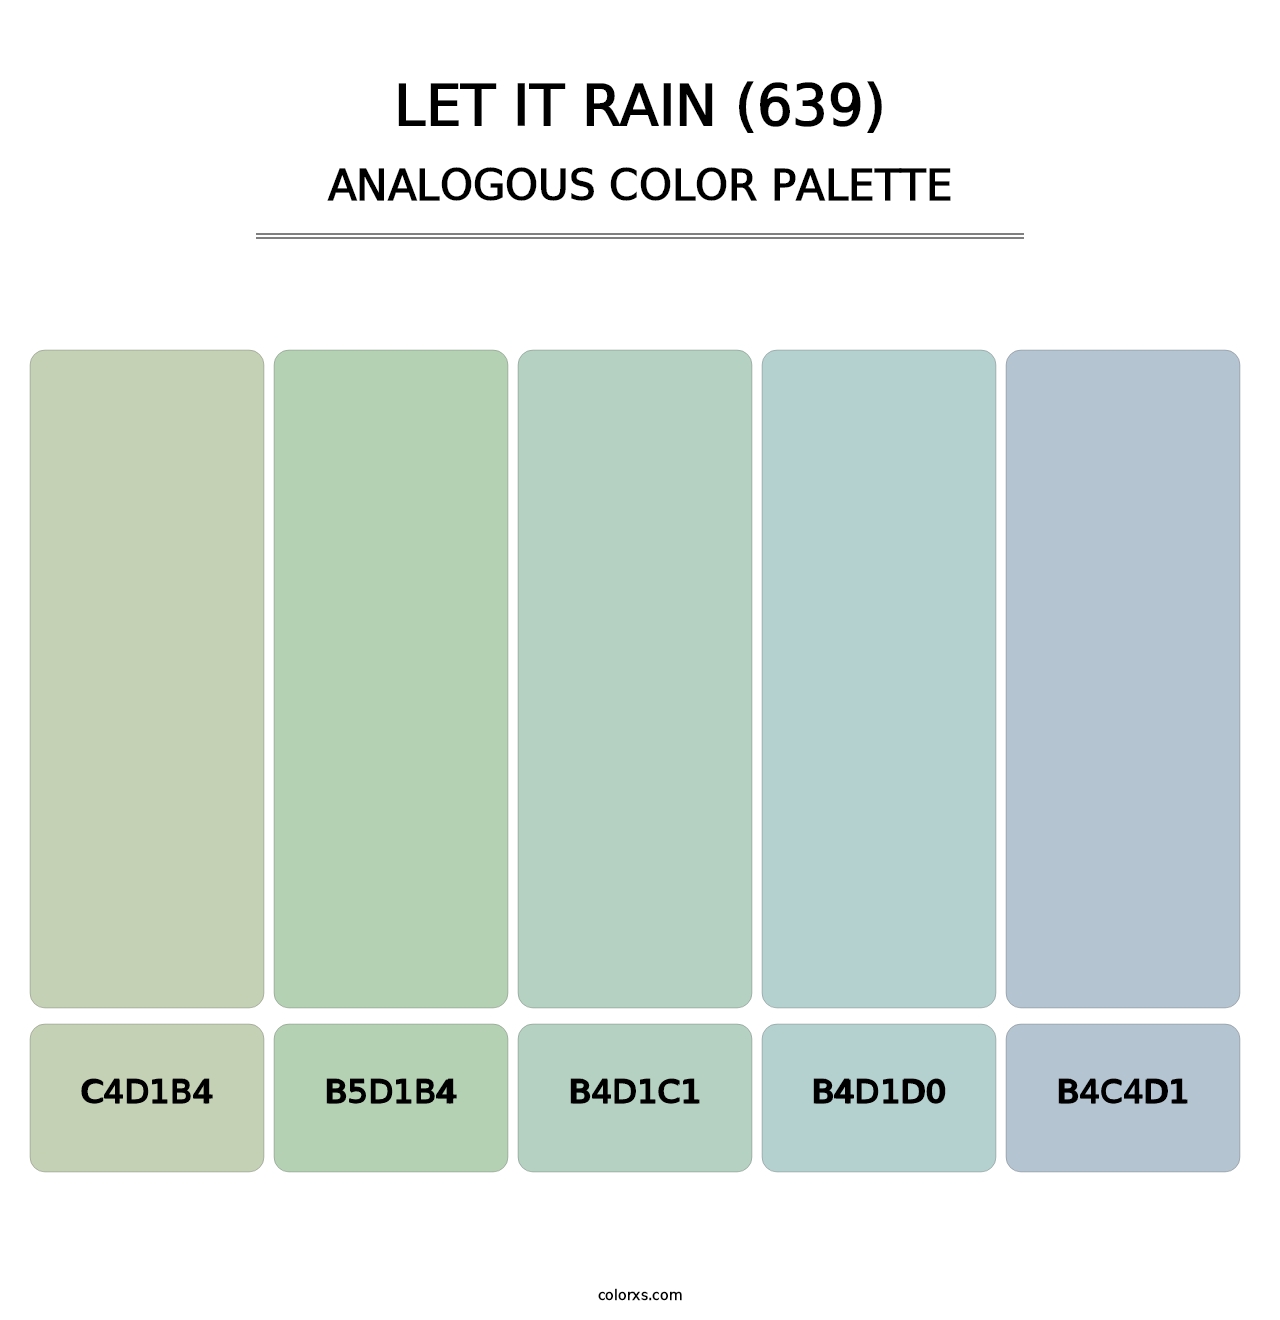 Let It Rain (639) - Analogous Color Palette